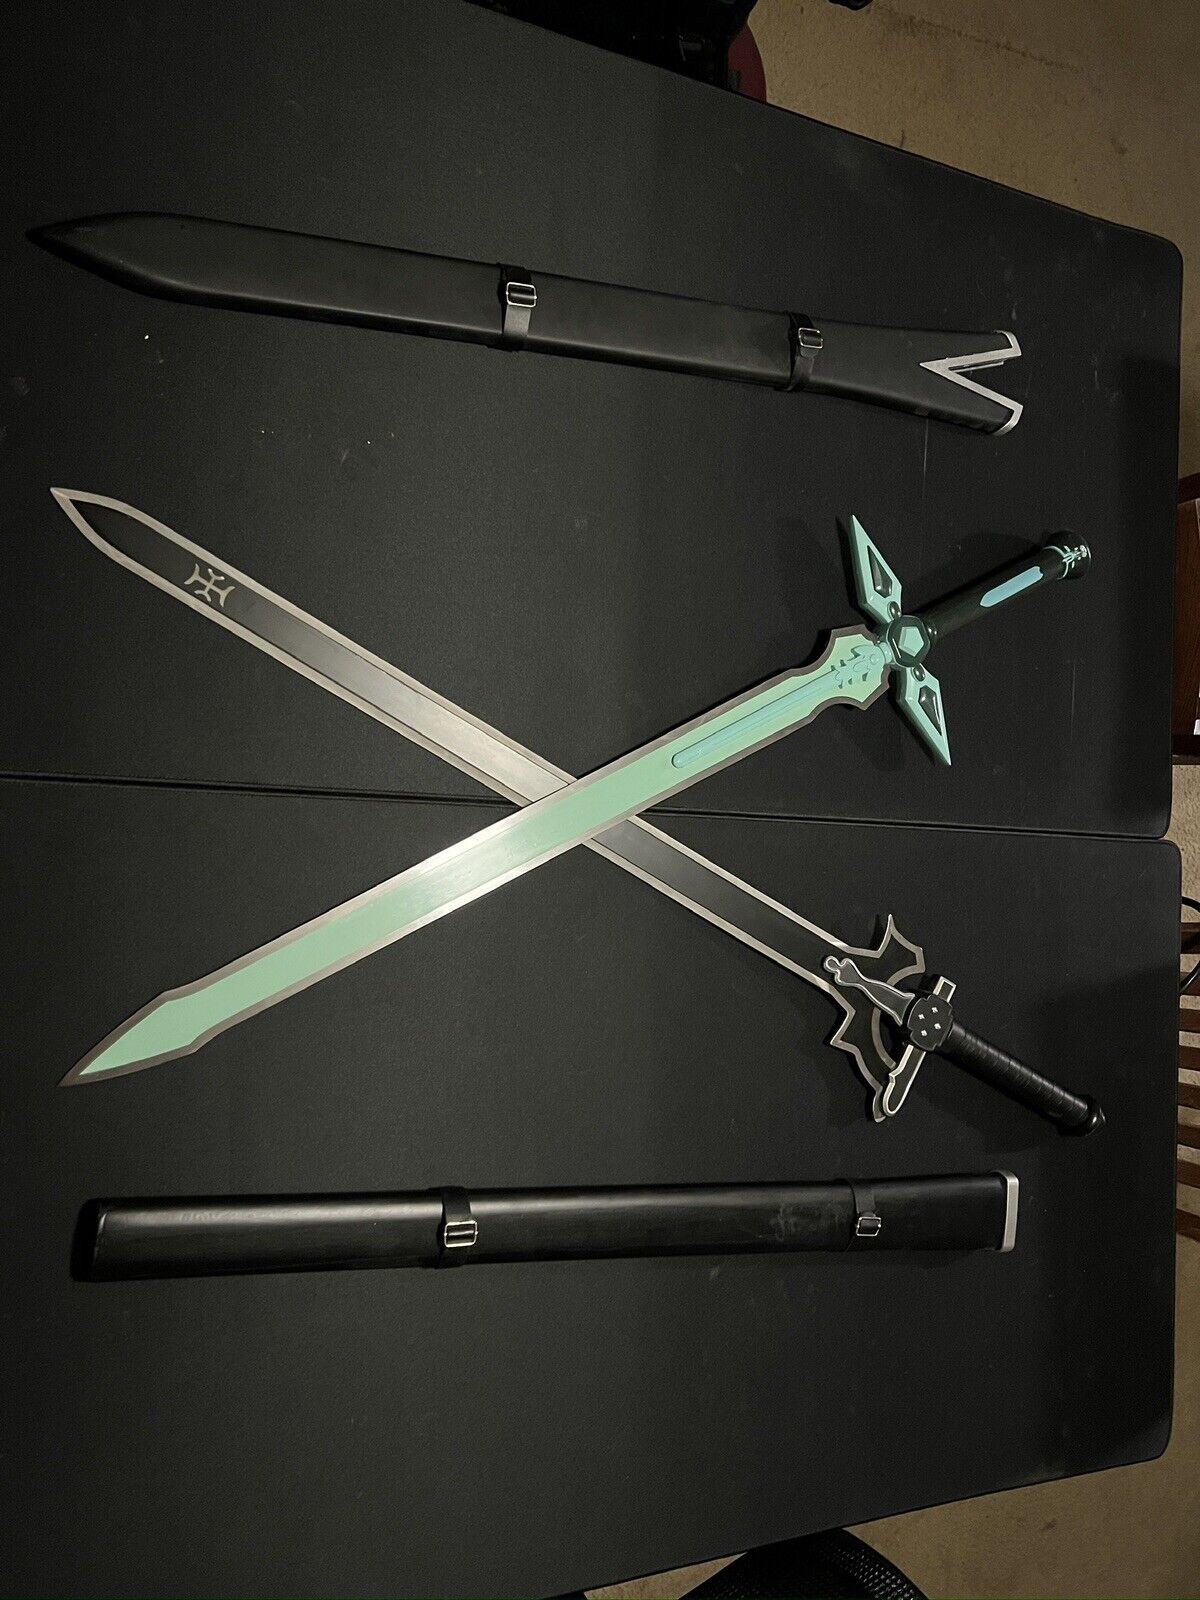 Elucidator and Dark Repulser Steel Swords with Back Harness and Display Stands